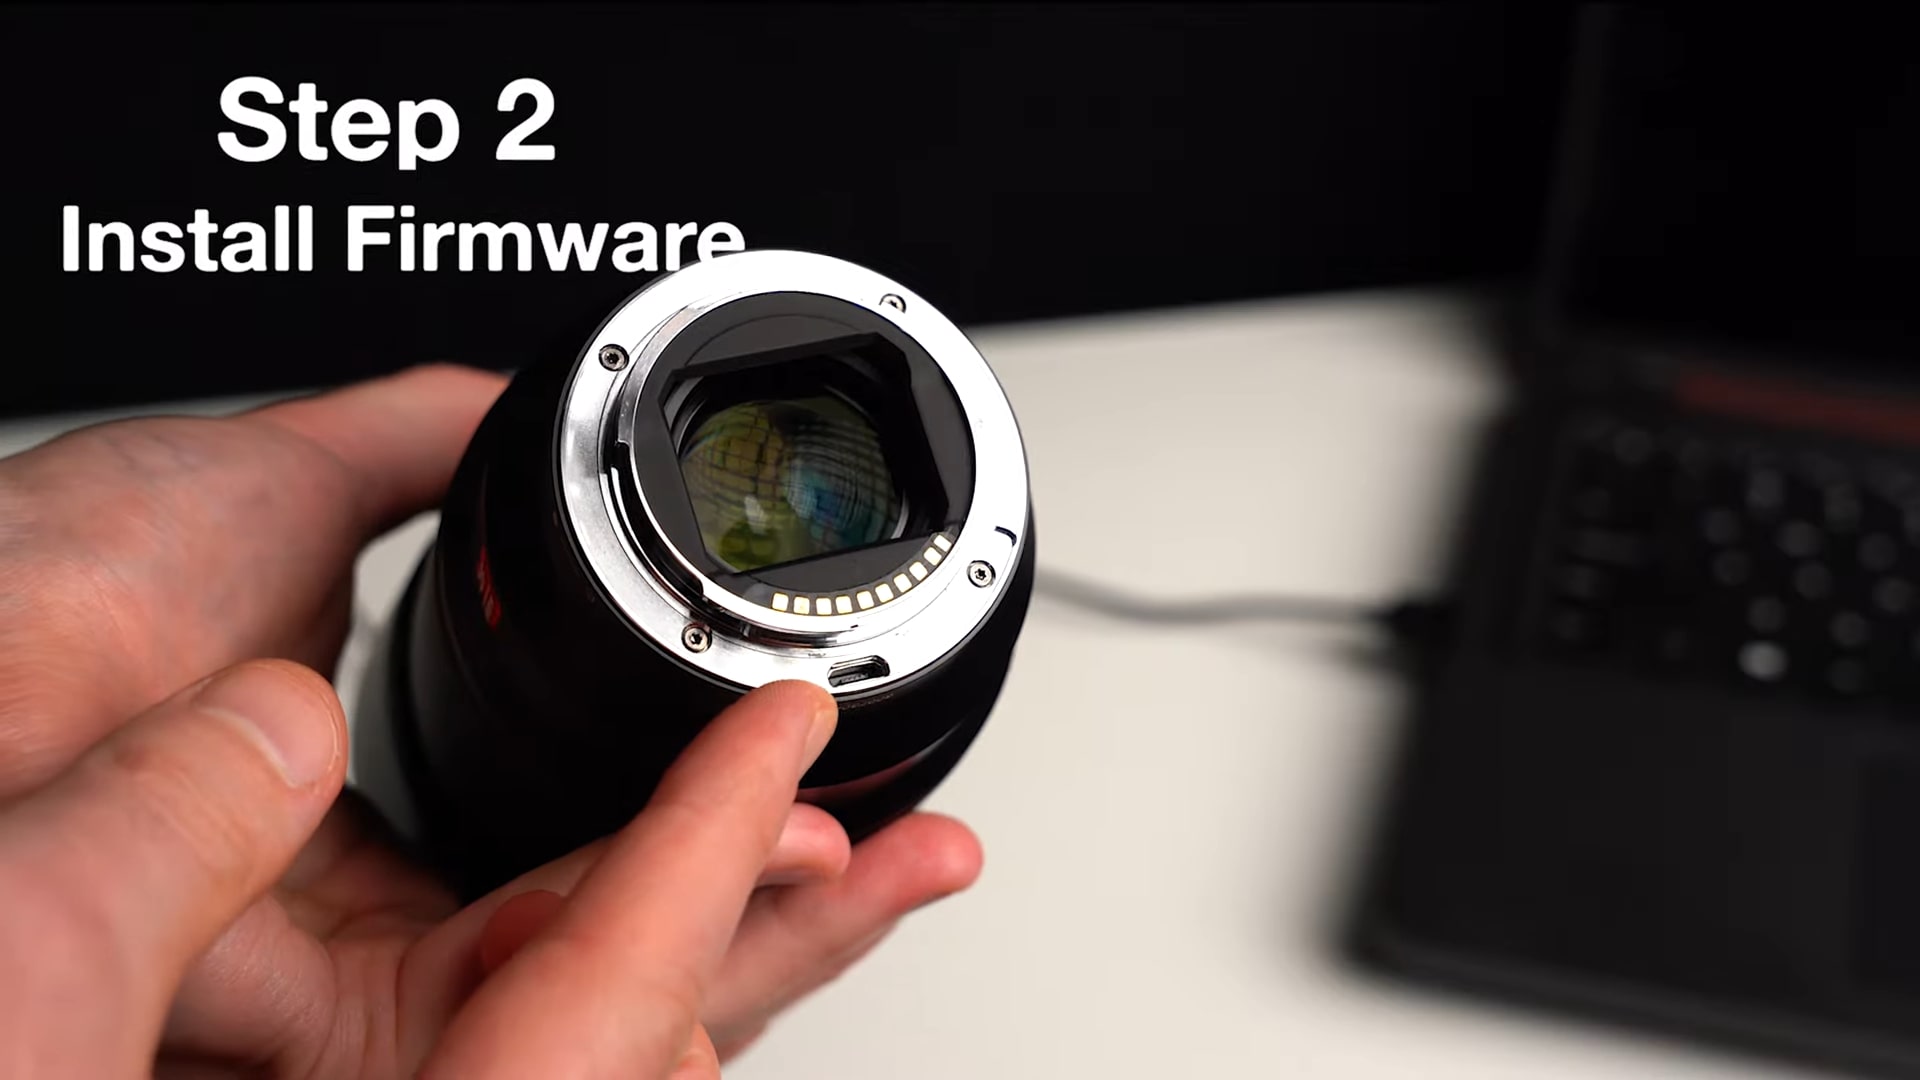 Ống kính Viltrox 85mm F1.8 nâng cấp thành F1.6 sau khi cập nhật firmware